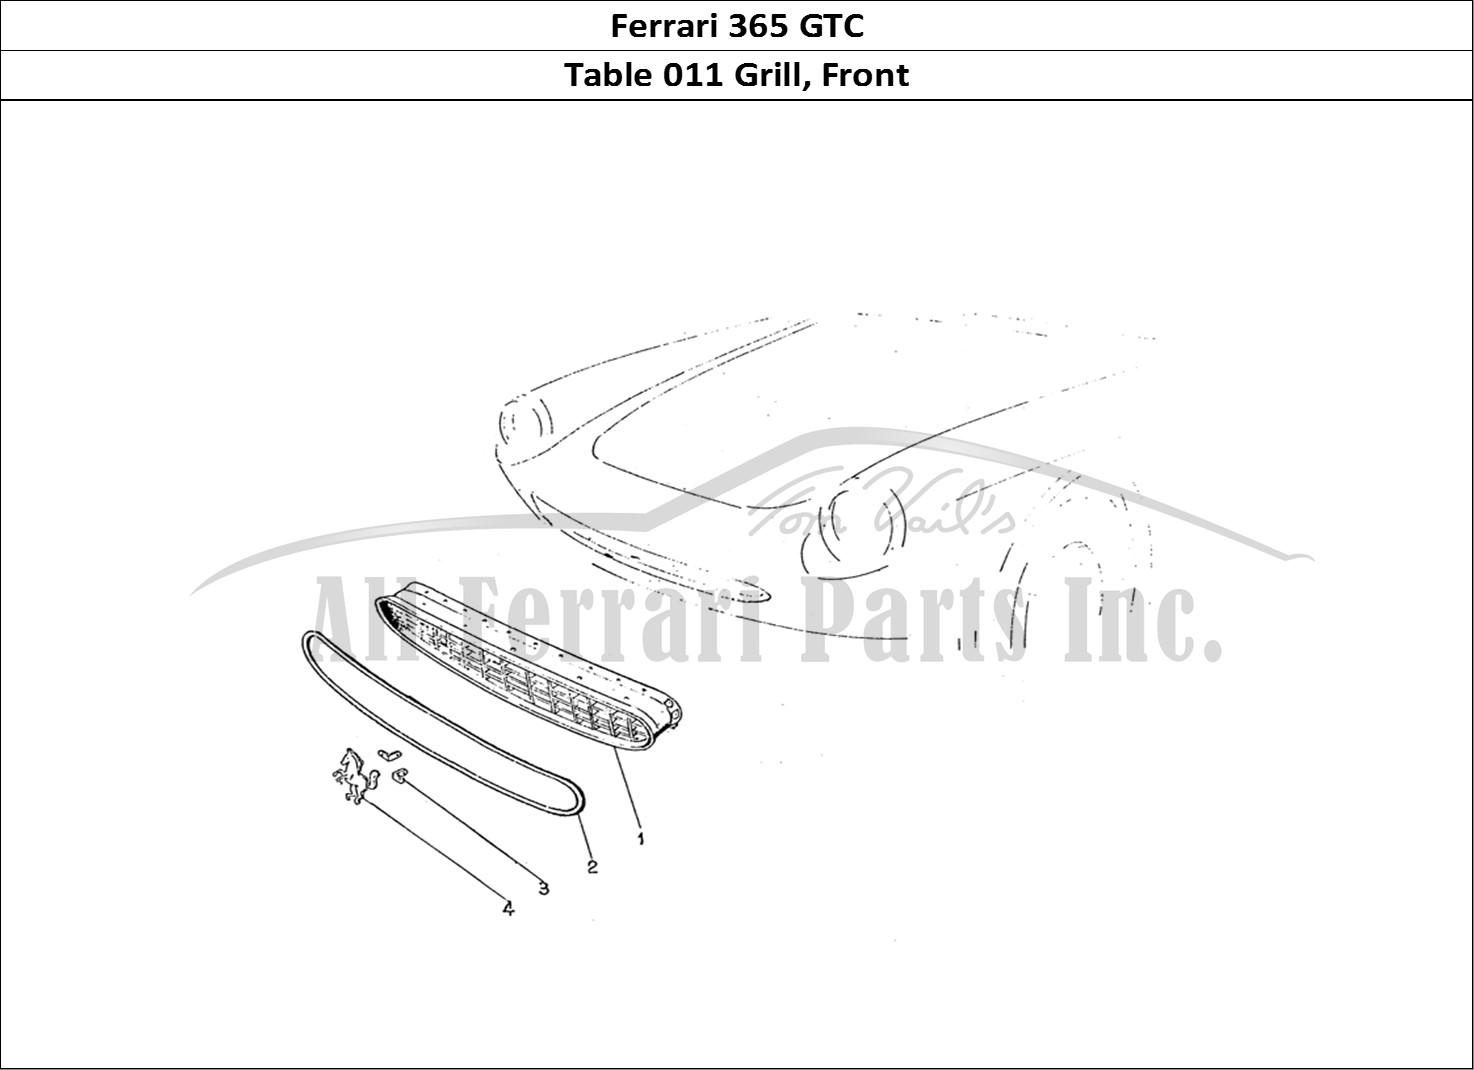 Ferrari Parts Ferrari 330 GTC (Coachwork) Page 011 Front grill